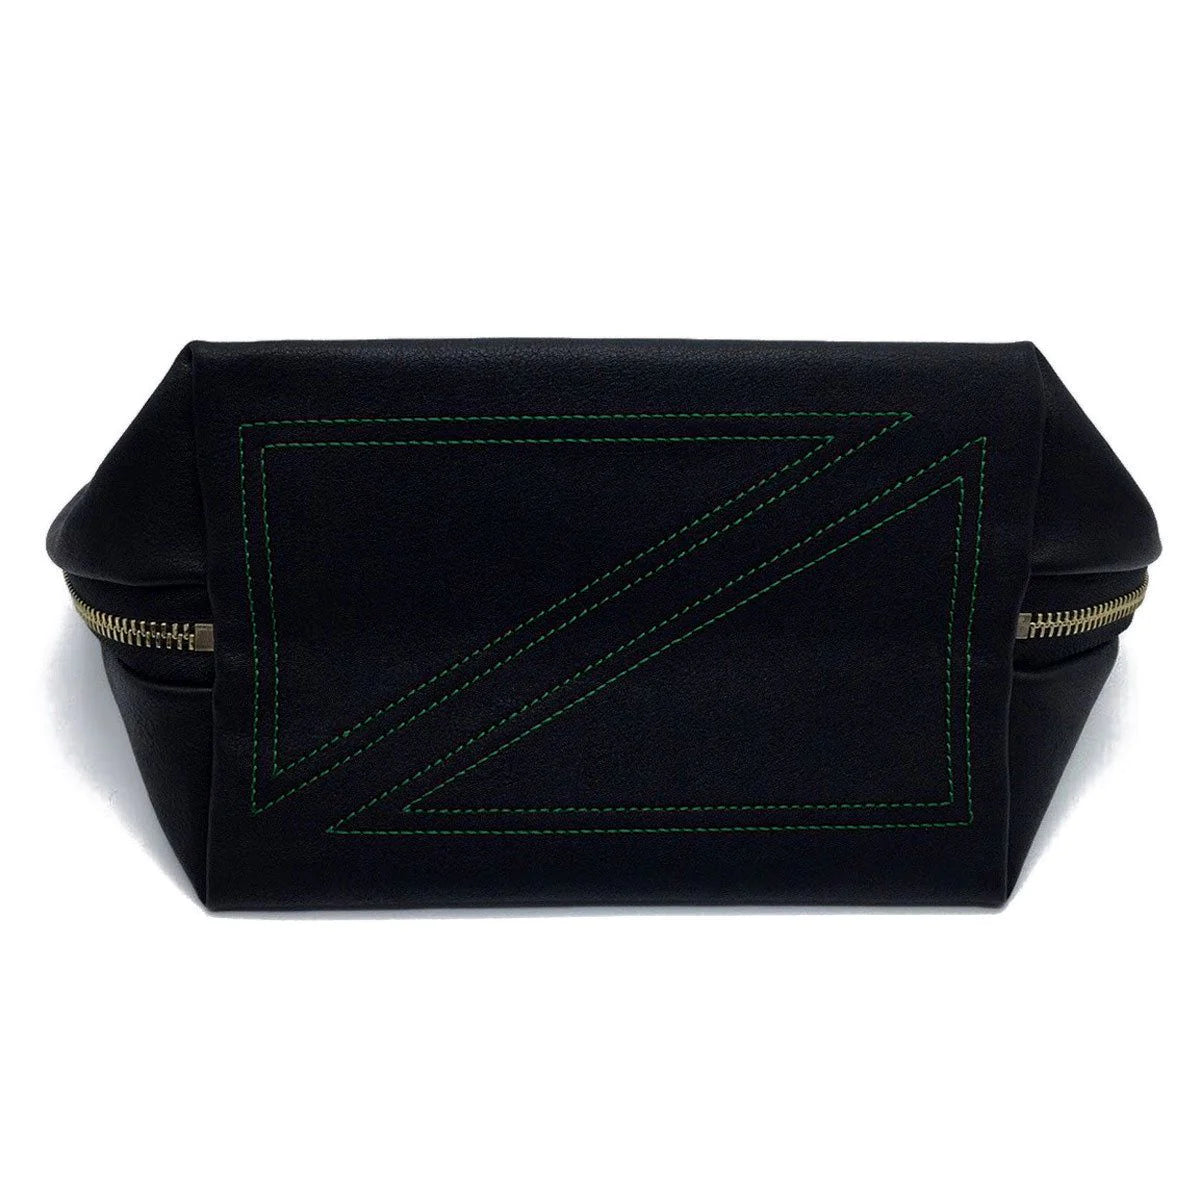 KUSSHI Signature Makeup Bag Black Fabric with Green Interior